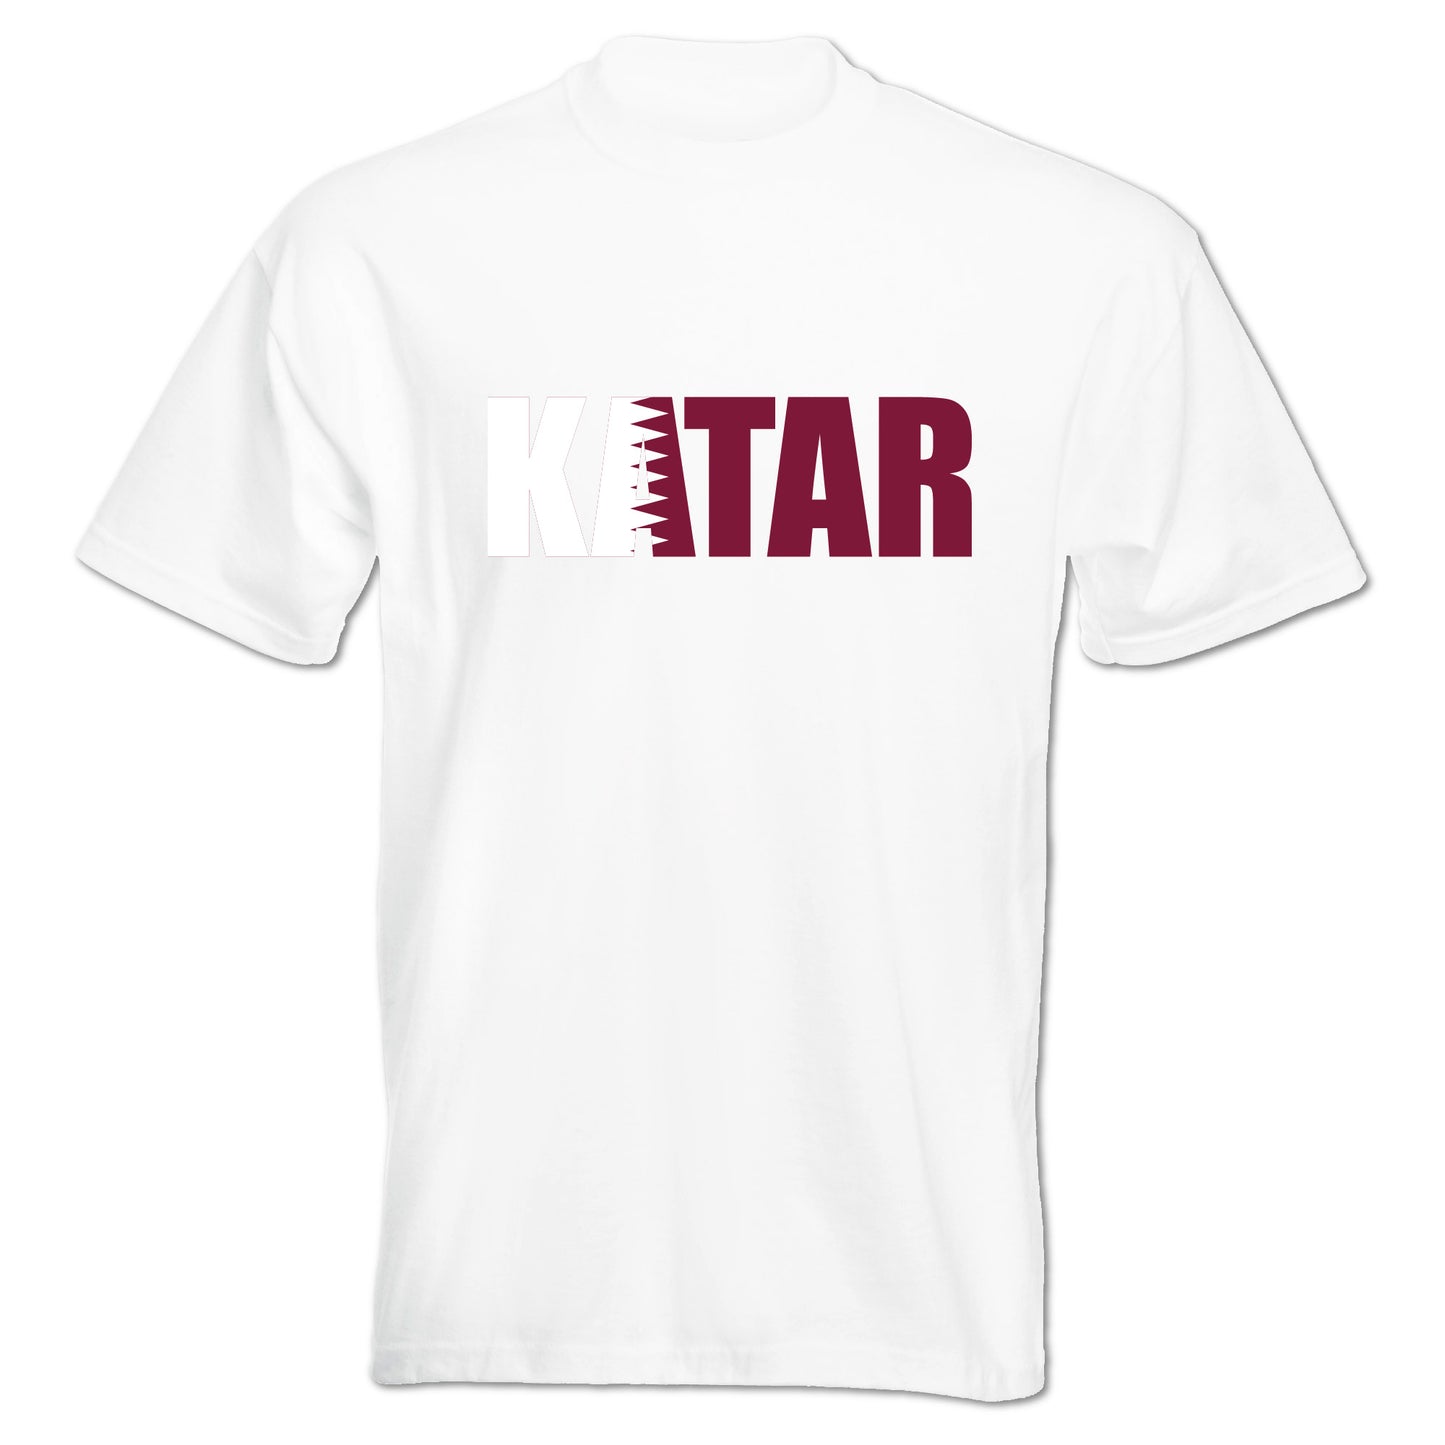 INDIGOS UG - T-Shirt Herren - Katar - Schriftzug - Fussball